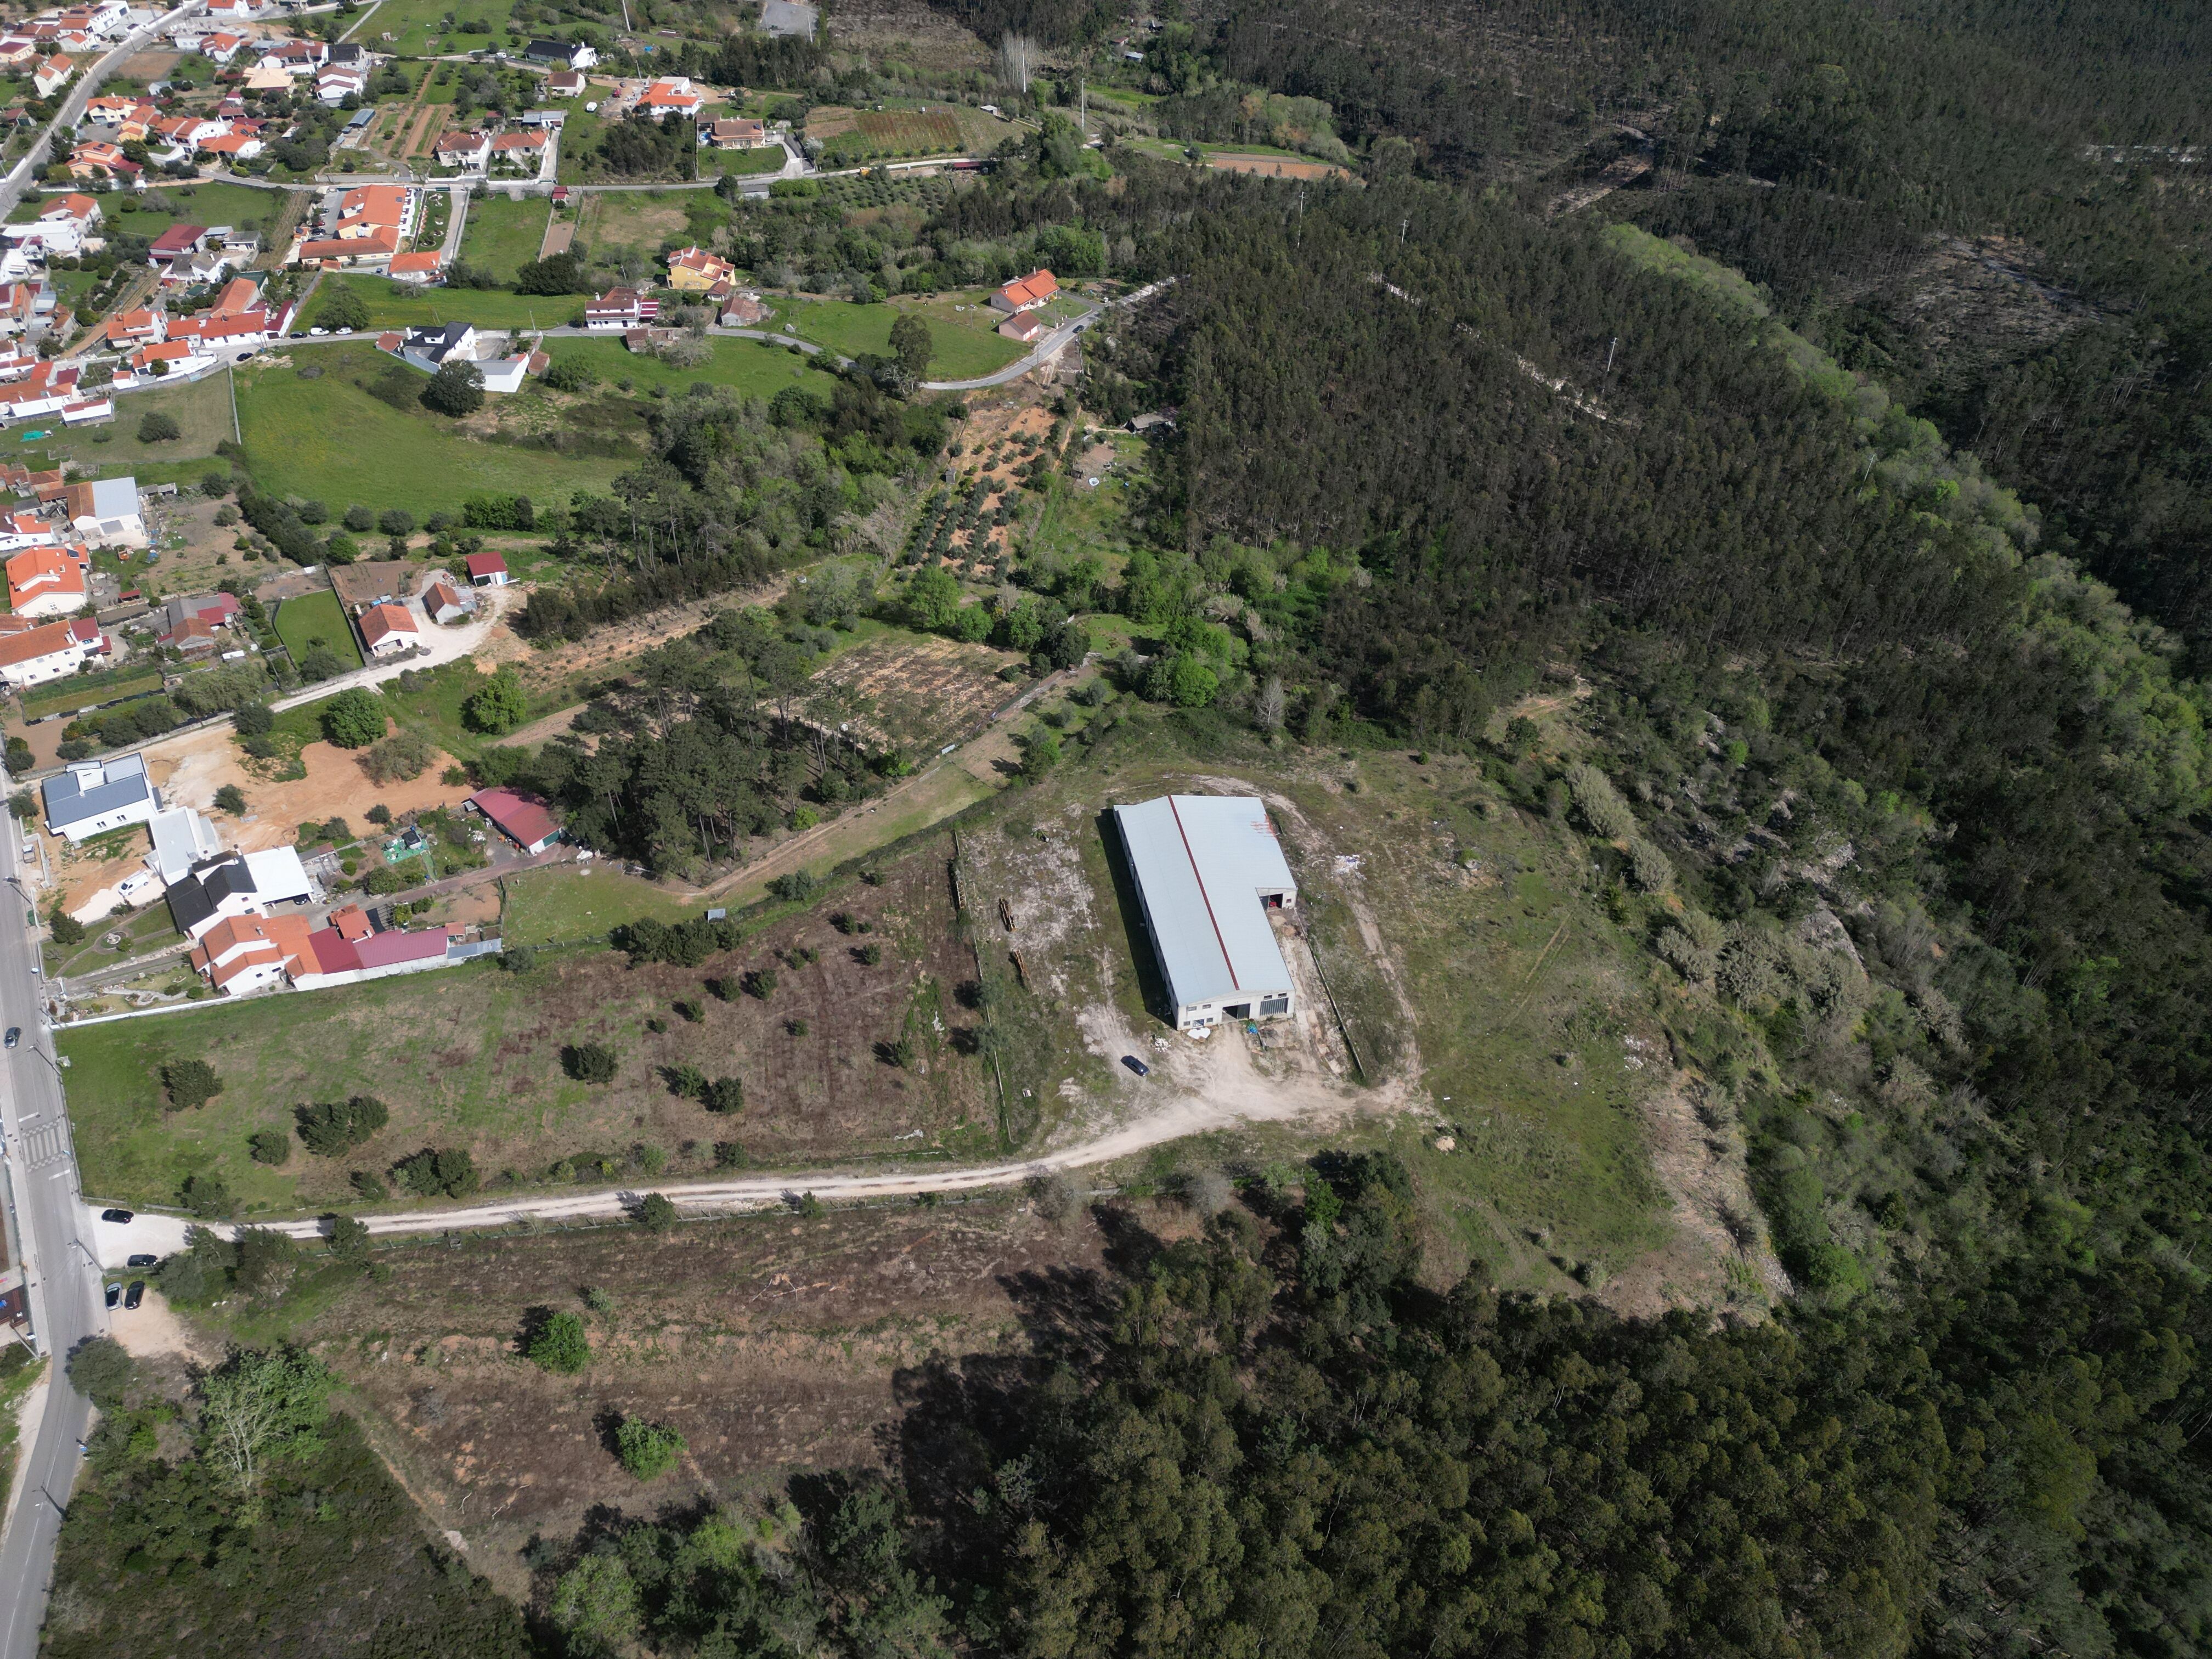 Terreno com 60390 m2 rústico urbanizável para construção na Pelariga - Pombal